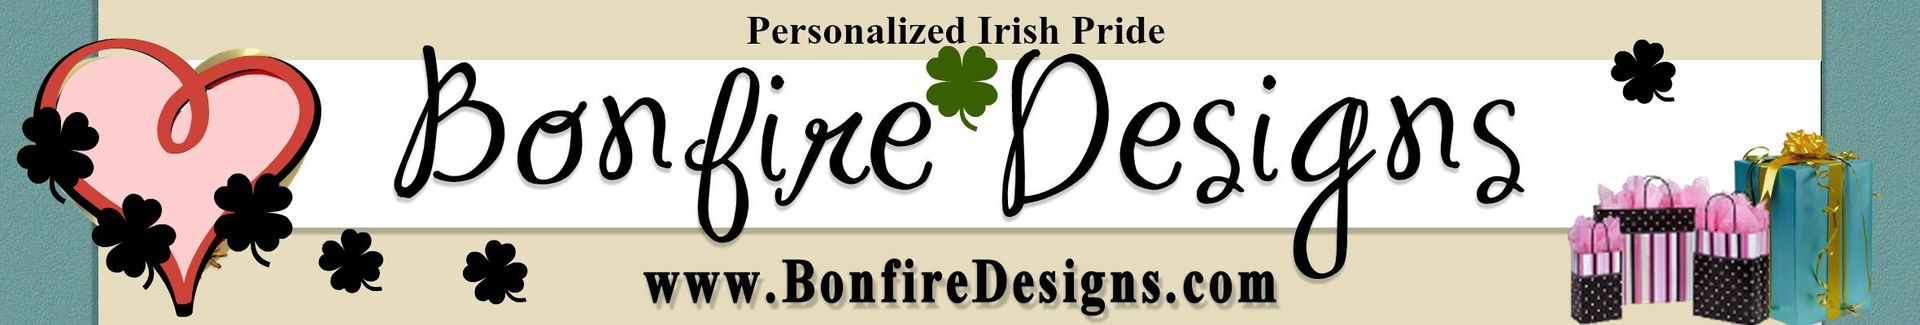 Irish Shirts and Gifts Personalized